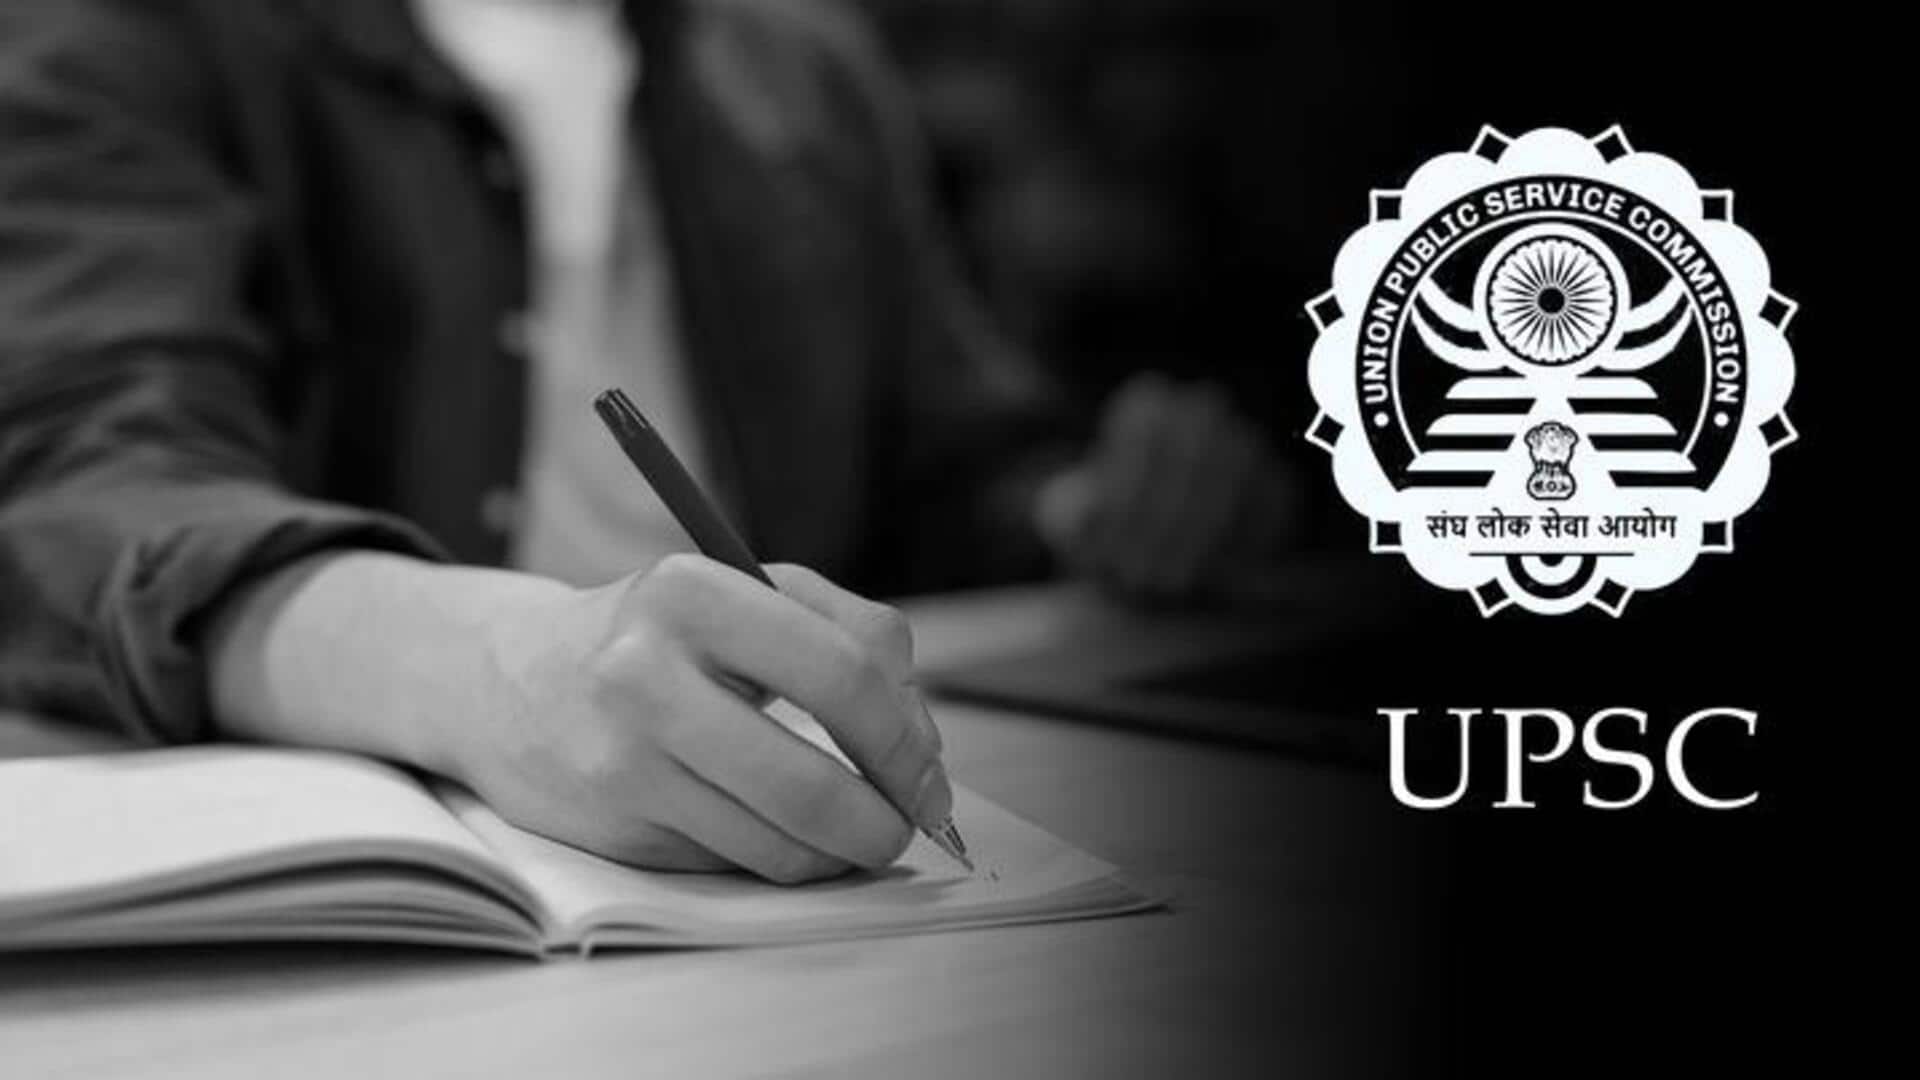 ये हैं UPSC मुख्य परीक्षा के लिए चुने जाने वाले शीर्ष 10 वैकल्पिक विषय